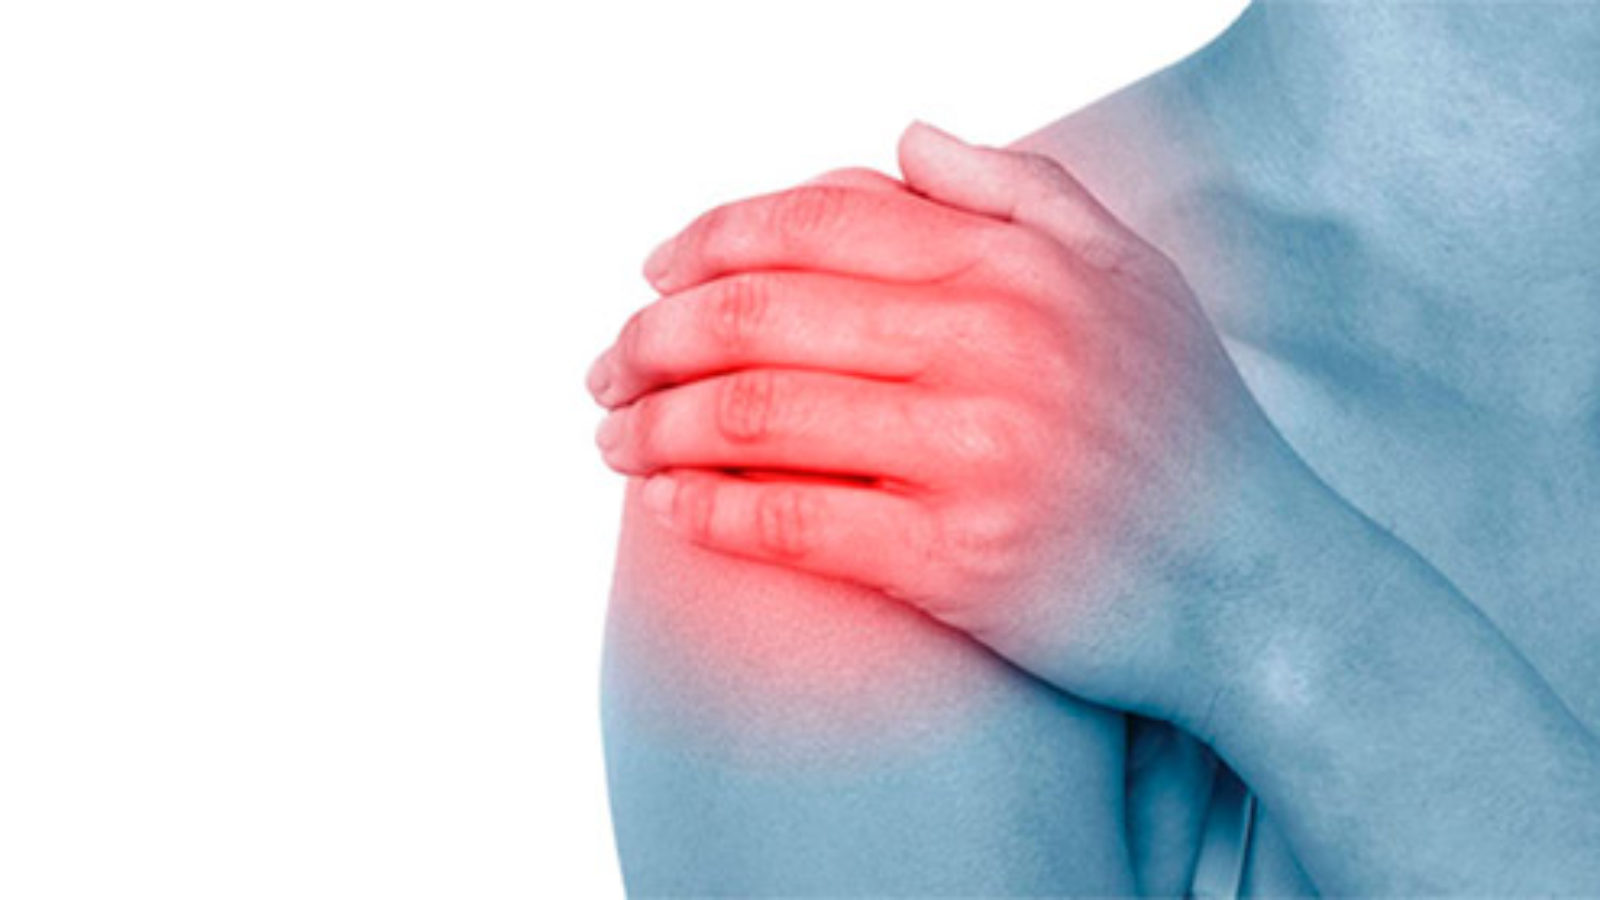 La lussazione della spalla è una fuoriuscita completa della spalla dalla sua sede naturale a seguito di sintomi di instabilità.